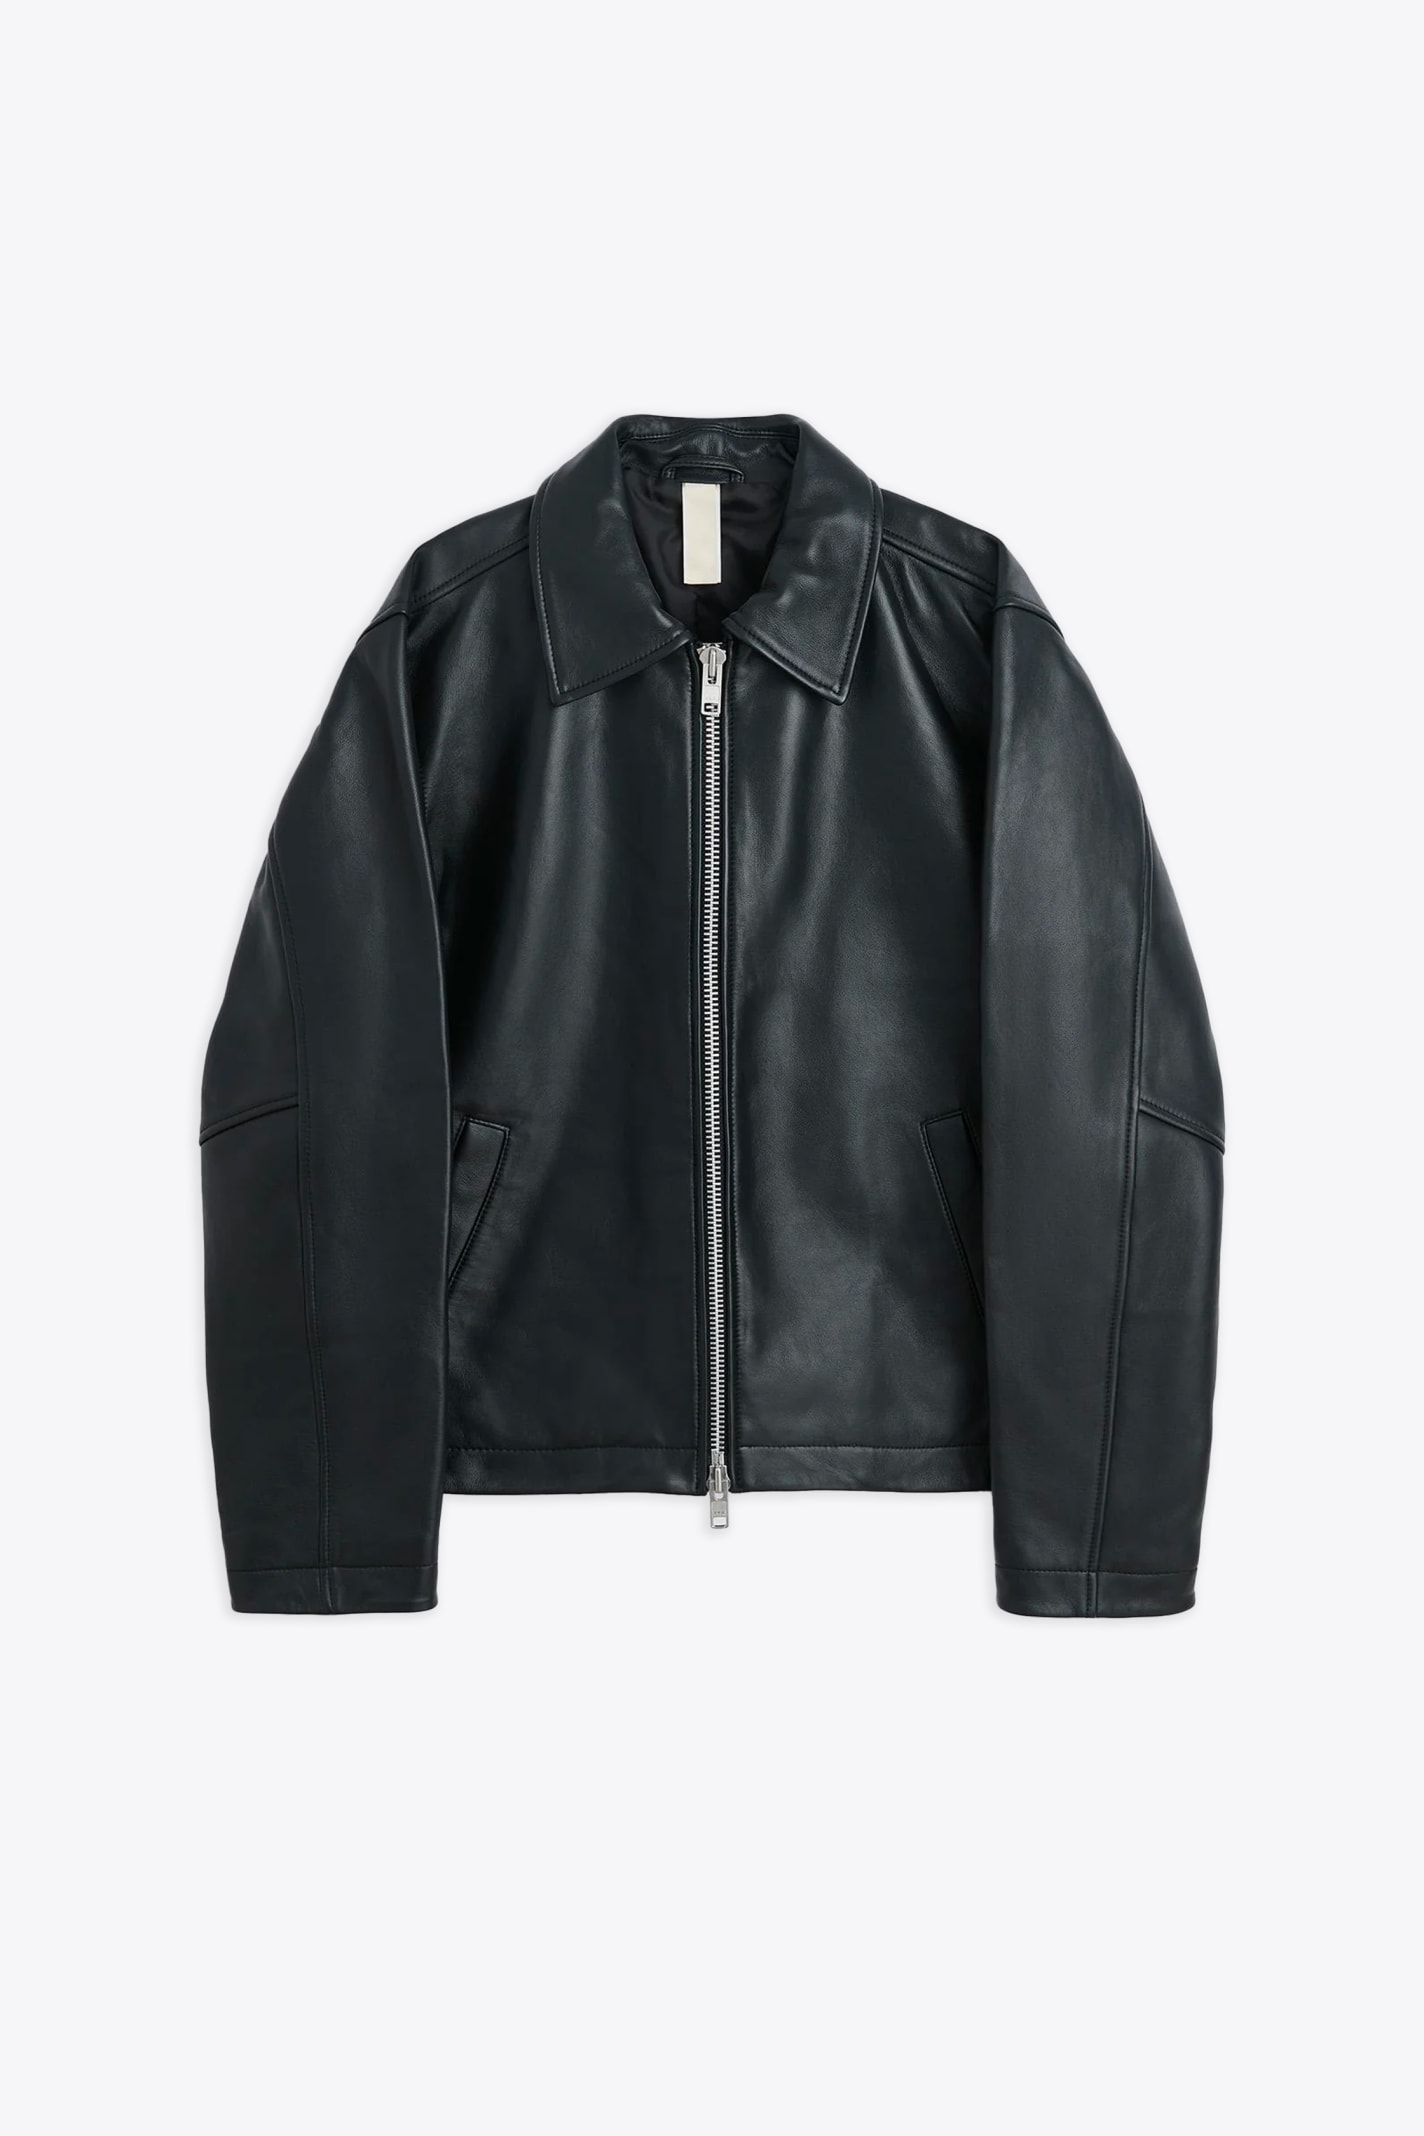 #6027 Black leather biker jacket - Short Leather Jacket